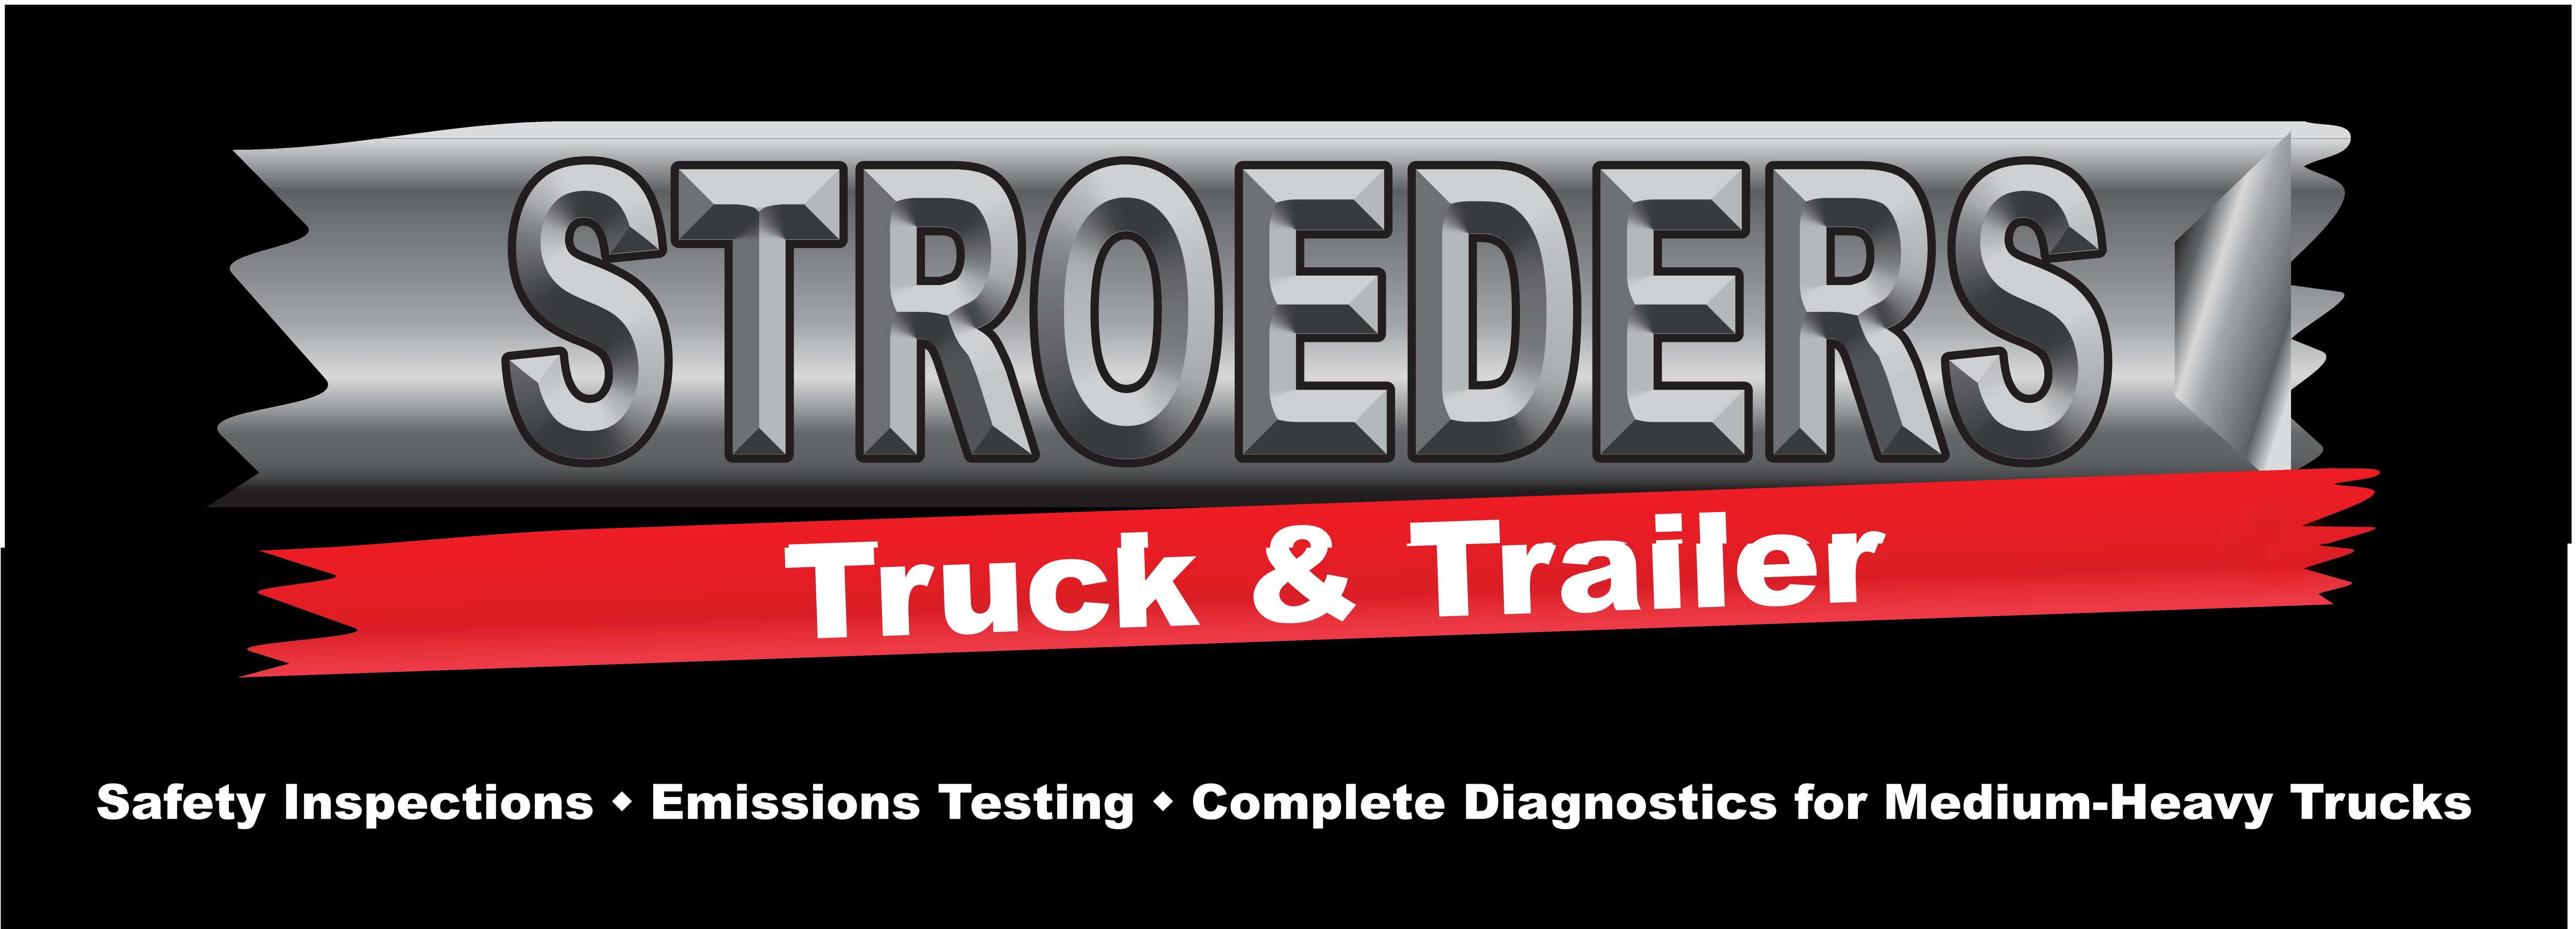 Stroeder Truck & Trailer Inc.